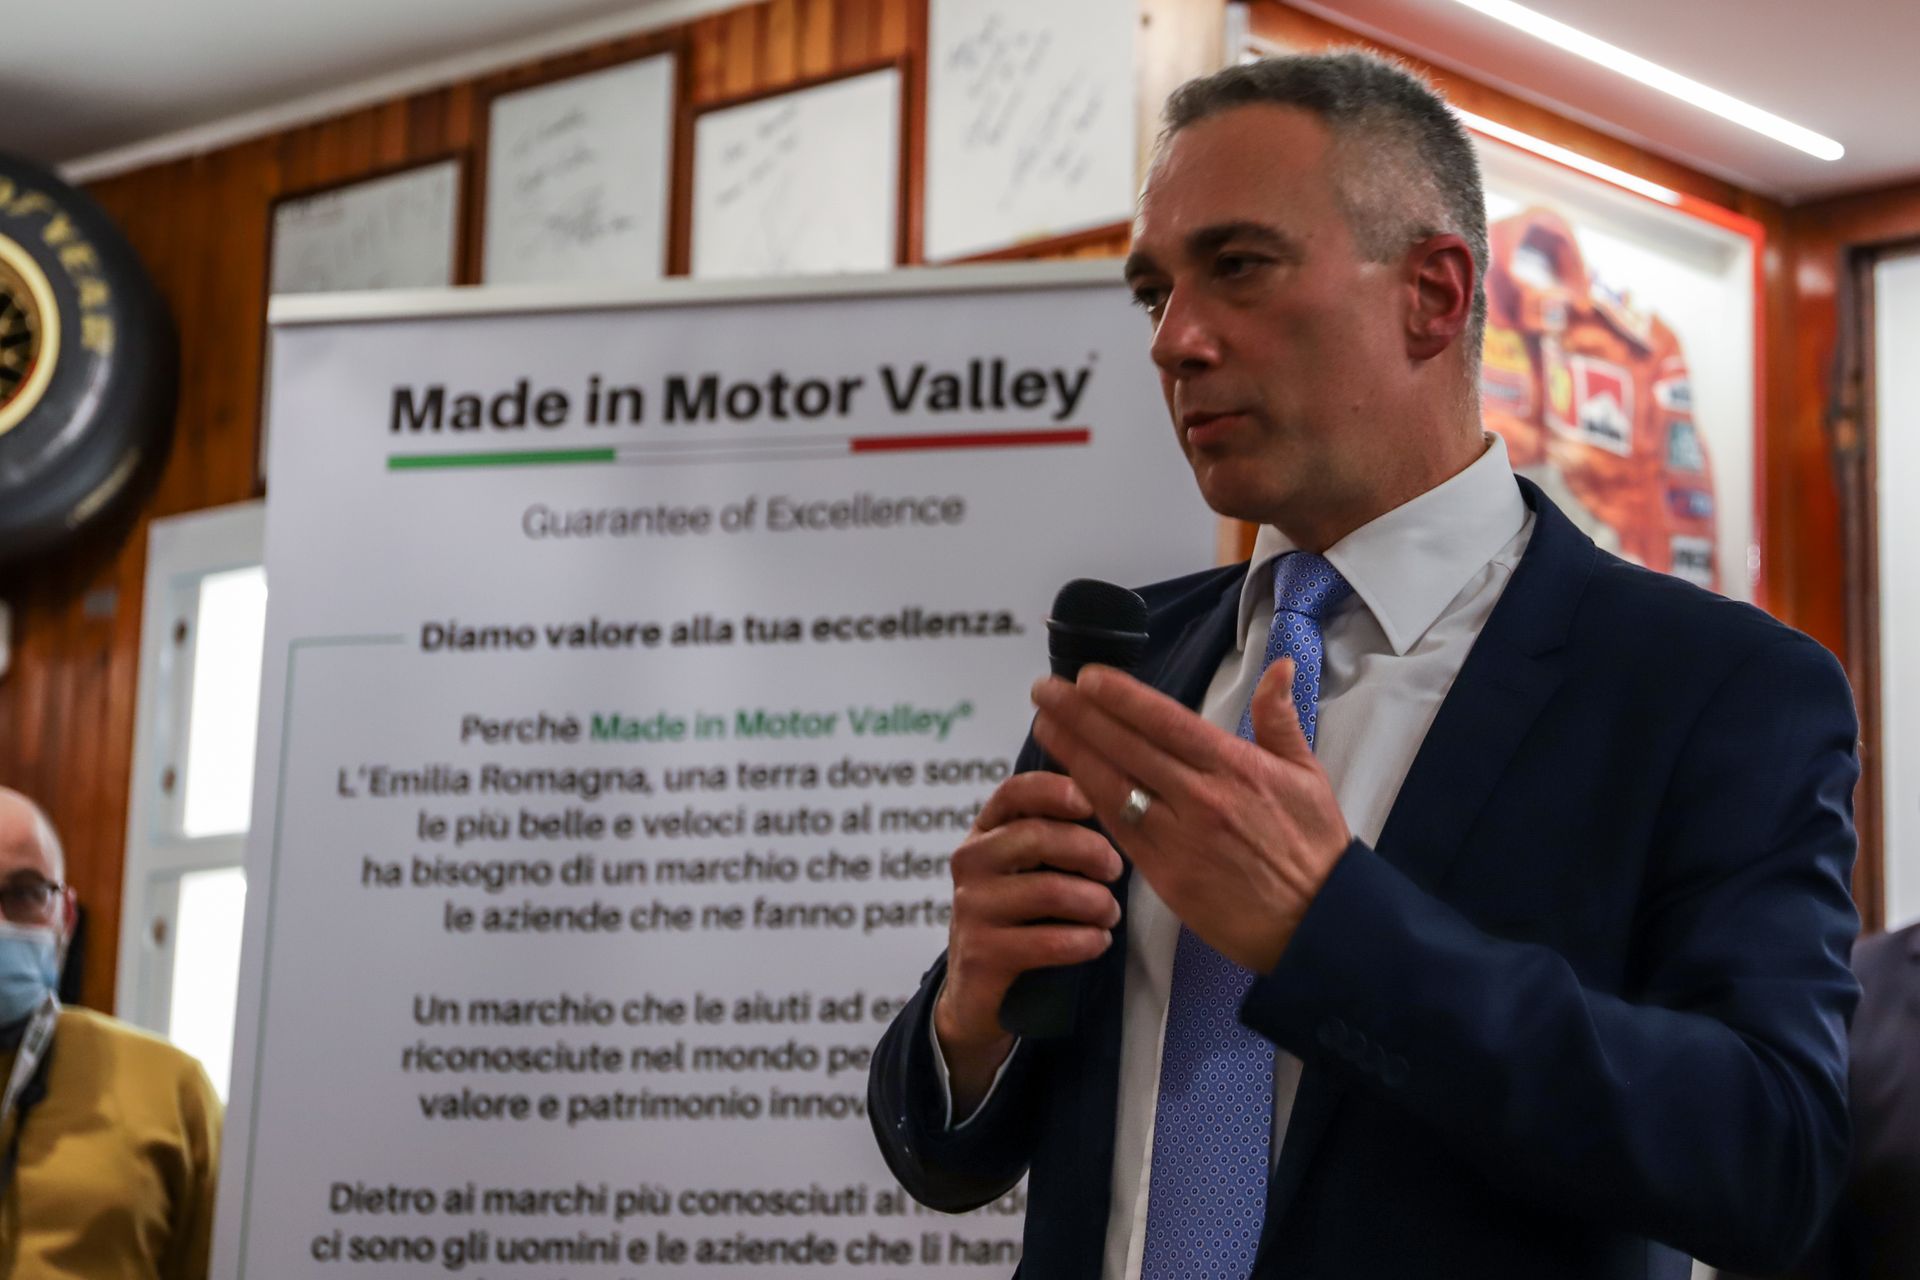 Preduzetnik iz Finale Socrate Zizza na predstavljanju inicijative "Made in Motor Valley" u Fiorano Modeneseu